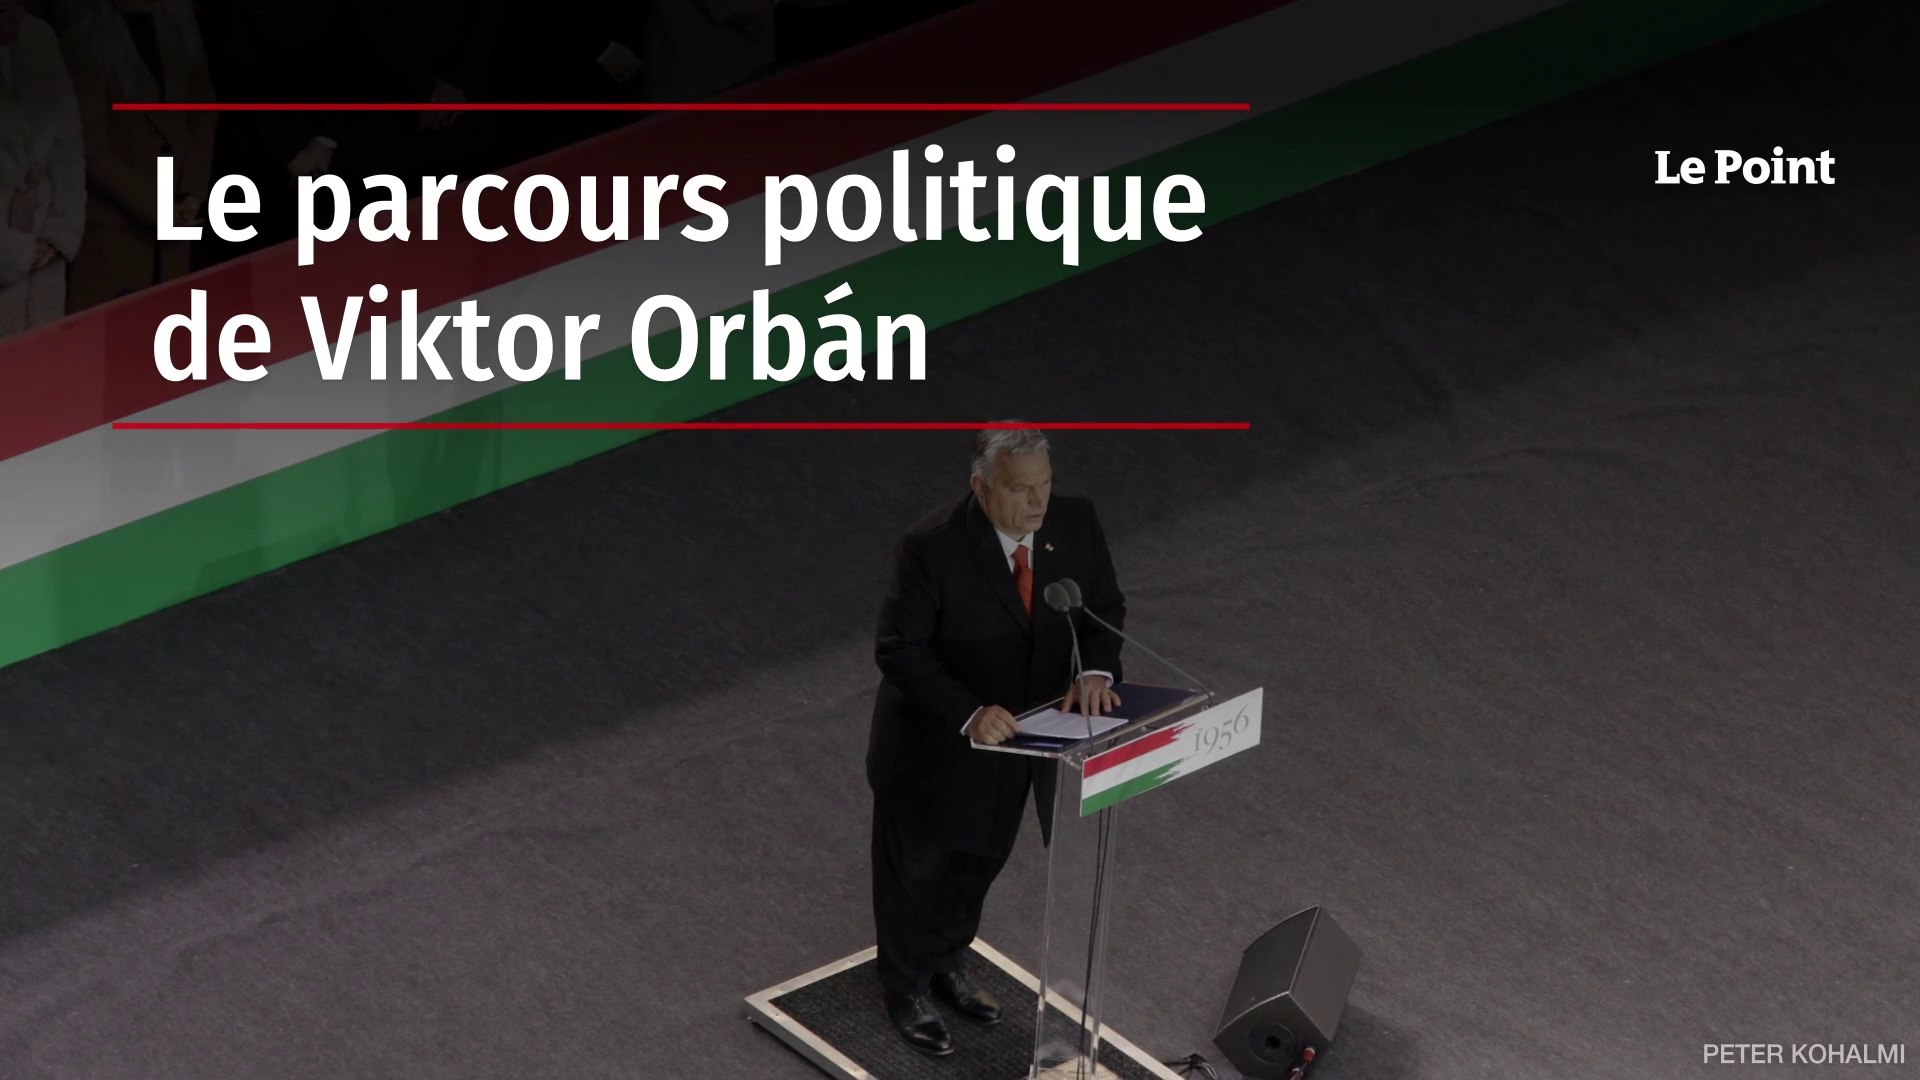 Le parcours politique de Viktor Orbán